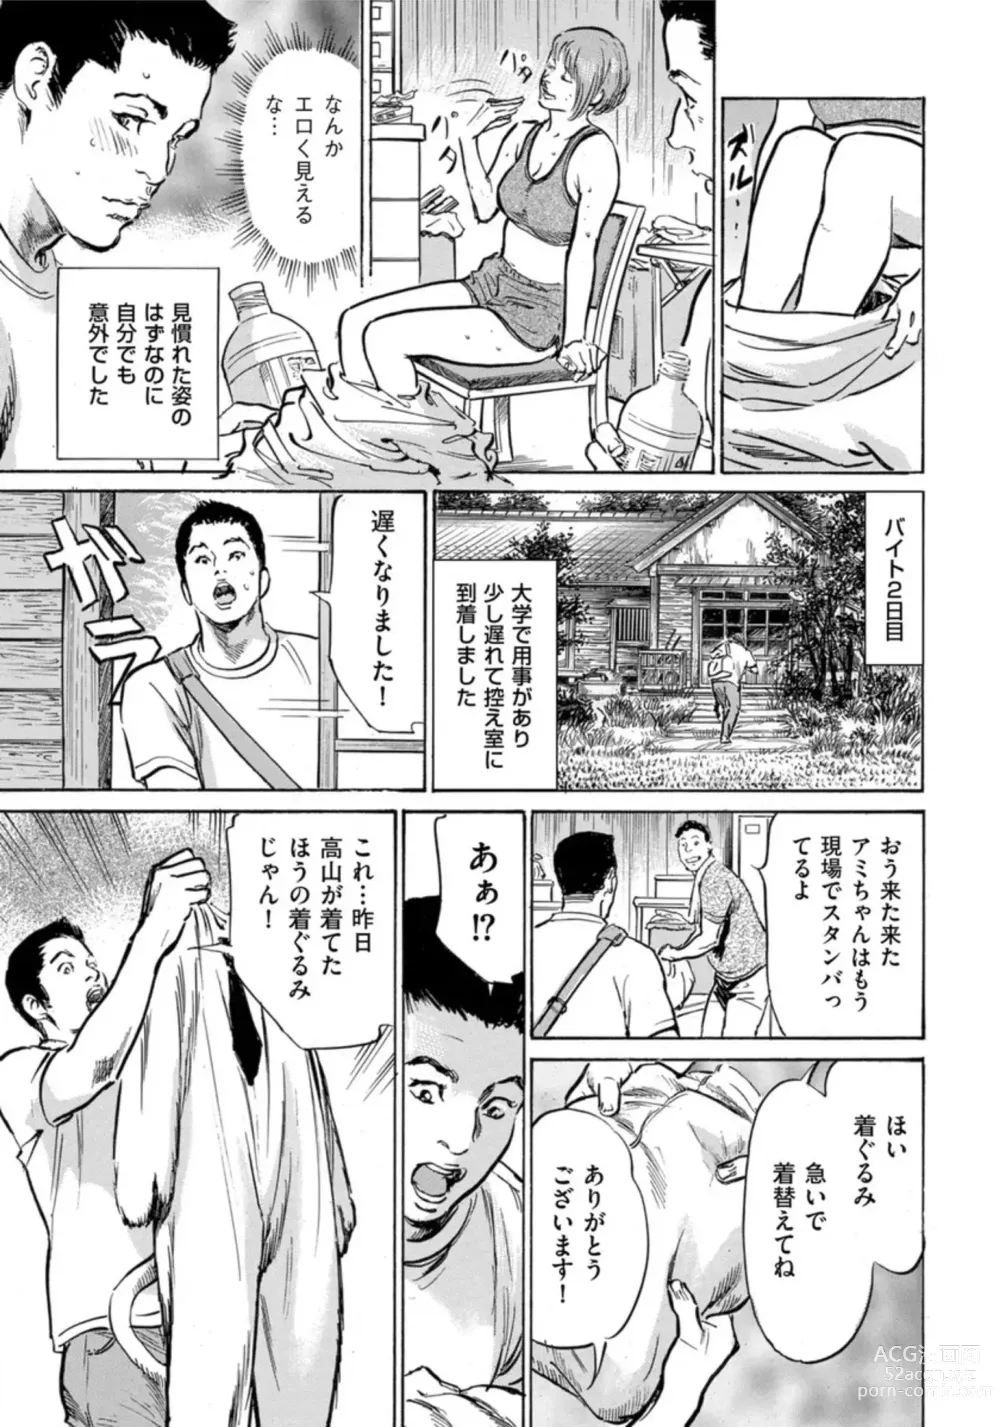 Page 8 of manga Zutto Himitsu ni Shiteita Ano Koto Zenbu Oshiemasu 14 episodes